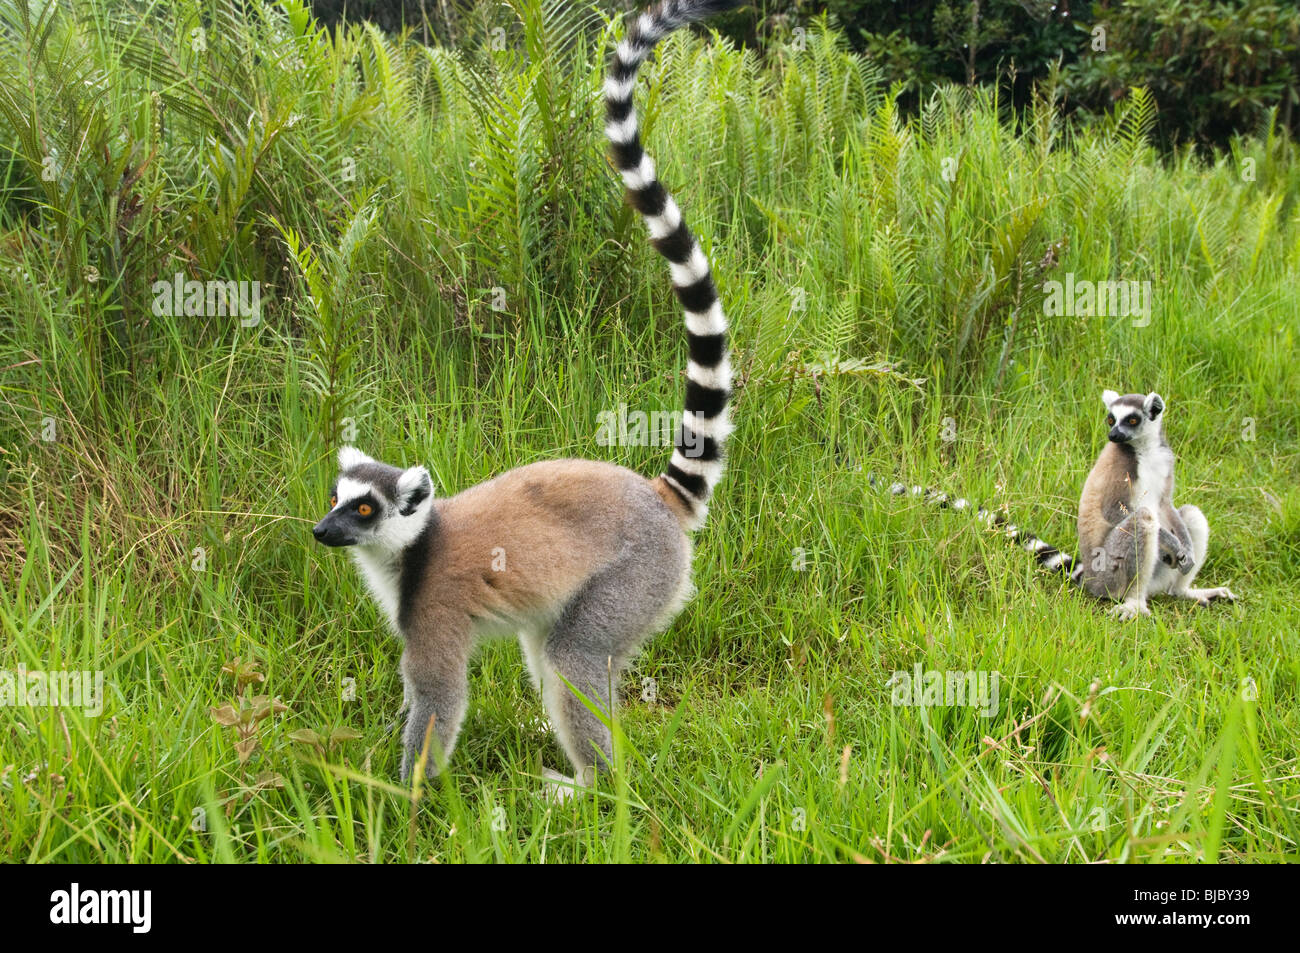 Les lémuriens à queue anneau jouant dans l'herbe Banque D'Images